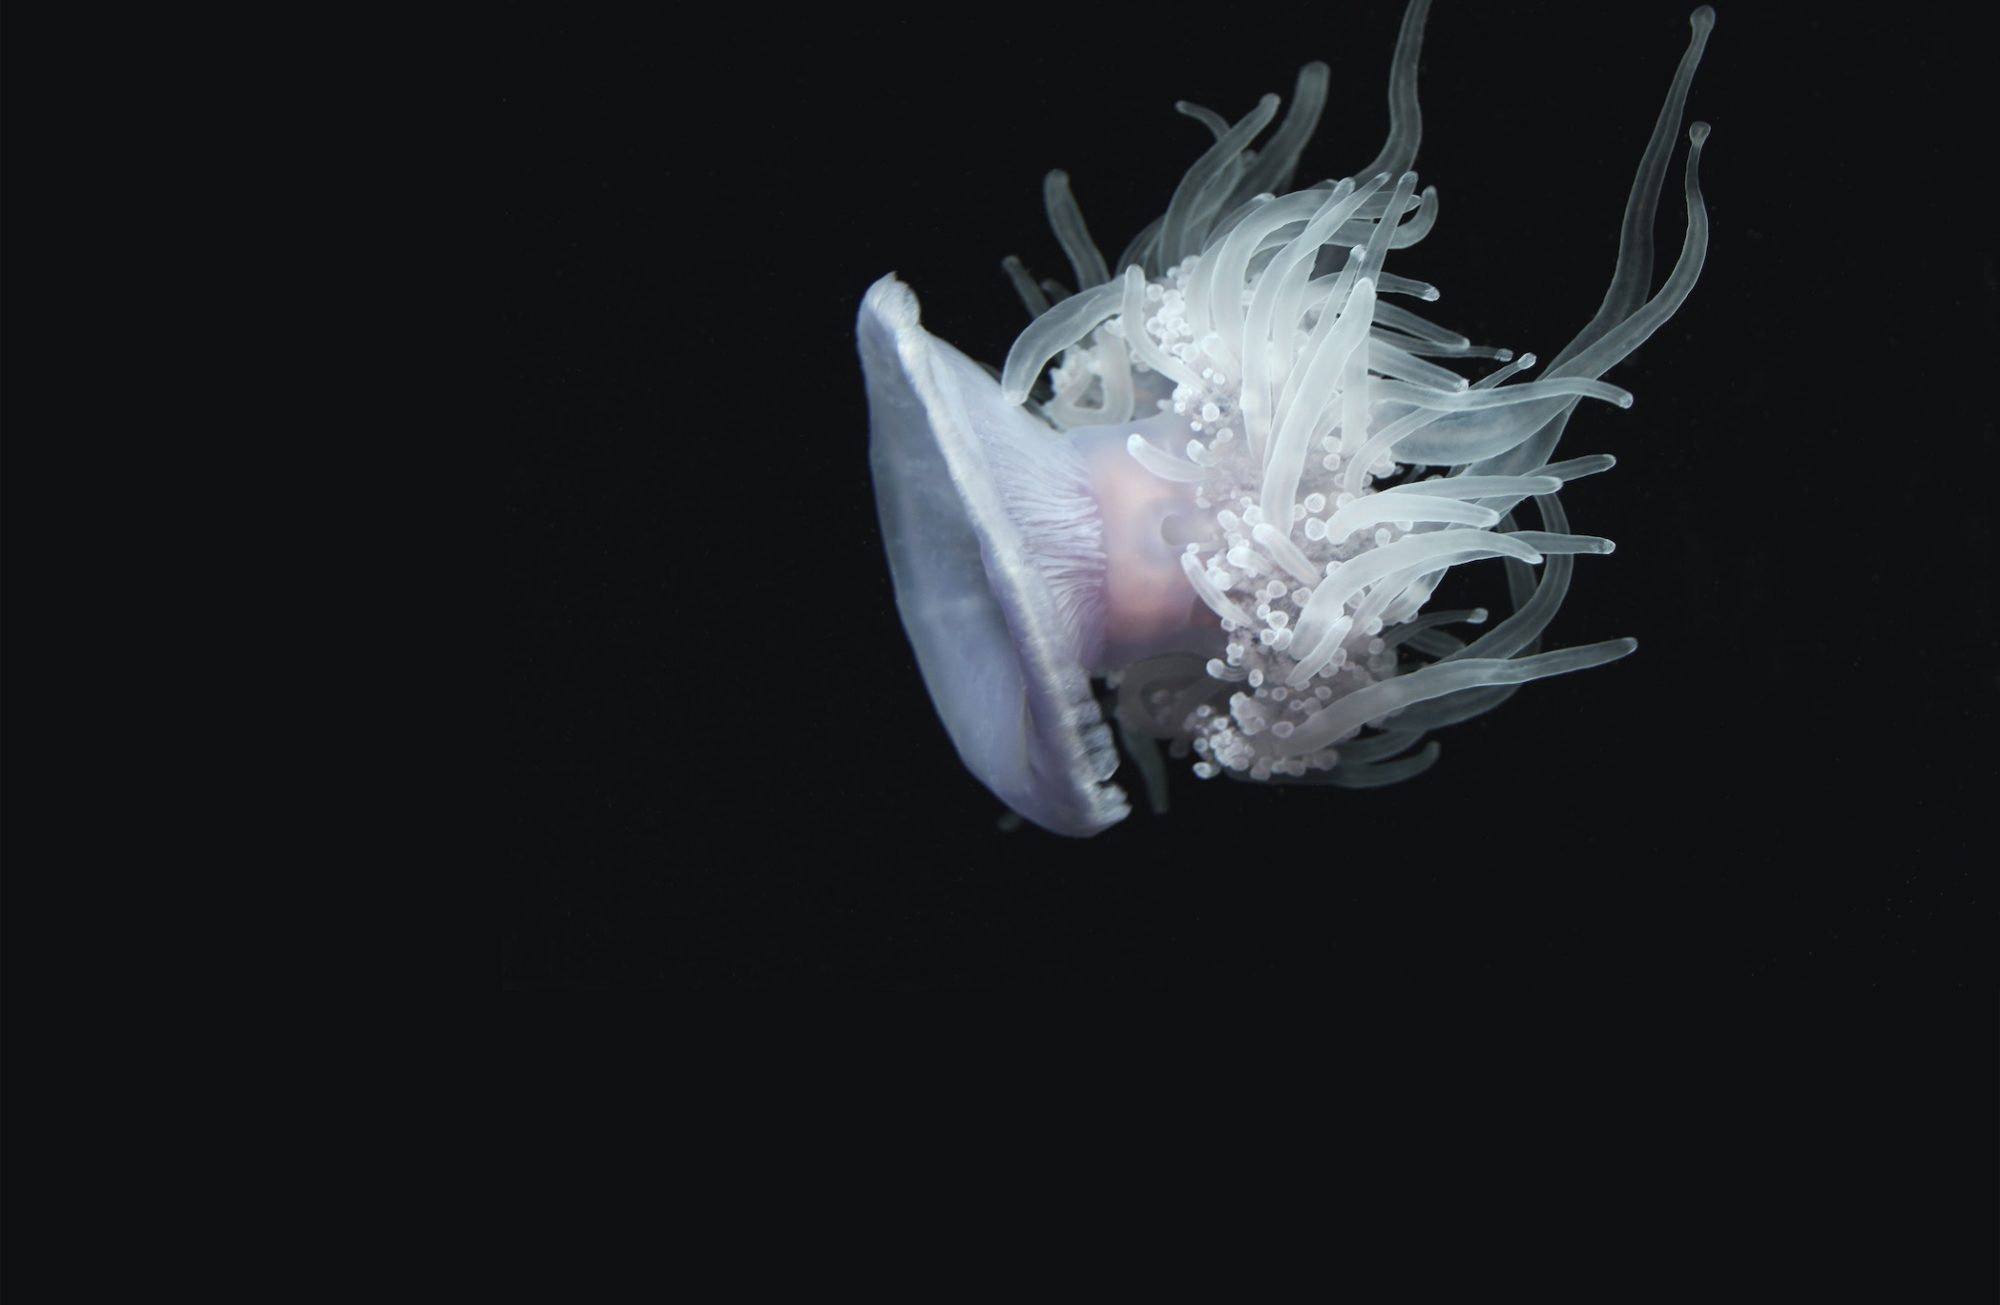 Méduse translucide dans l'eau